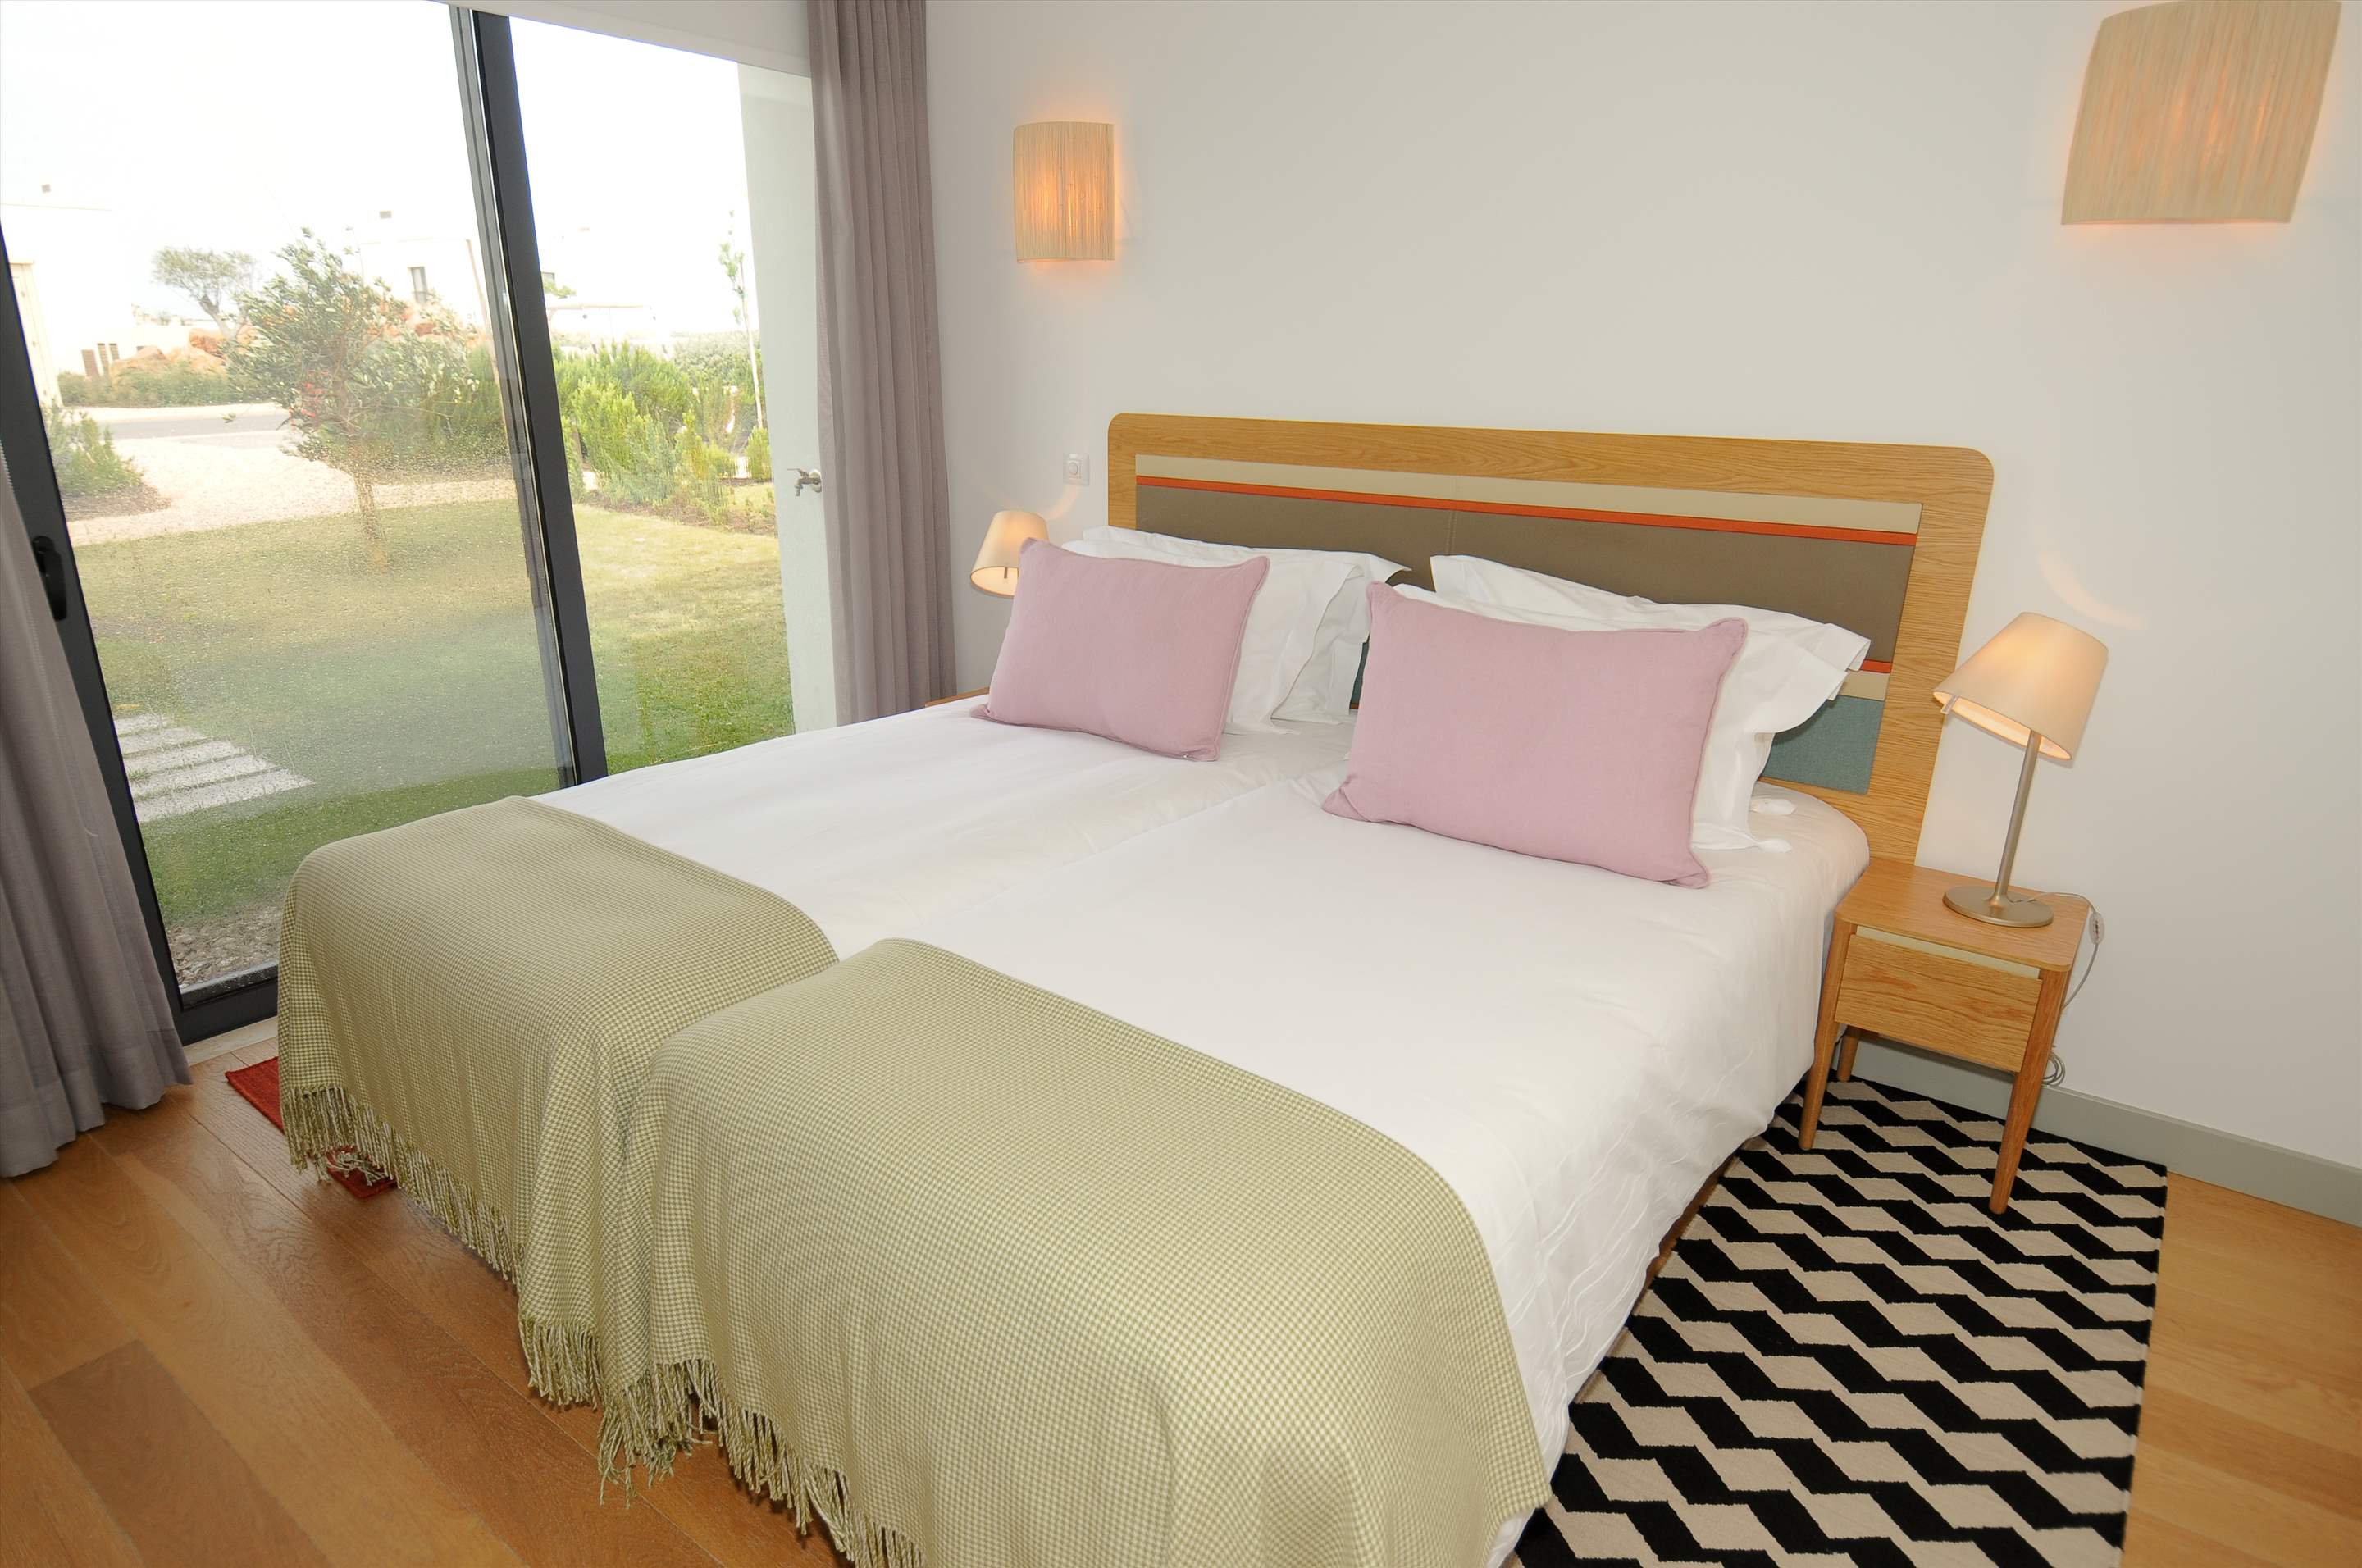 Martinhal Village Bay House, Master Bay House Three Bedroom, 3 bedroom villa in Martinhal Sagres, Algarve Photo #5